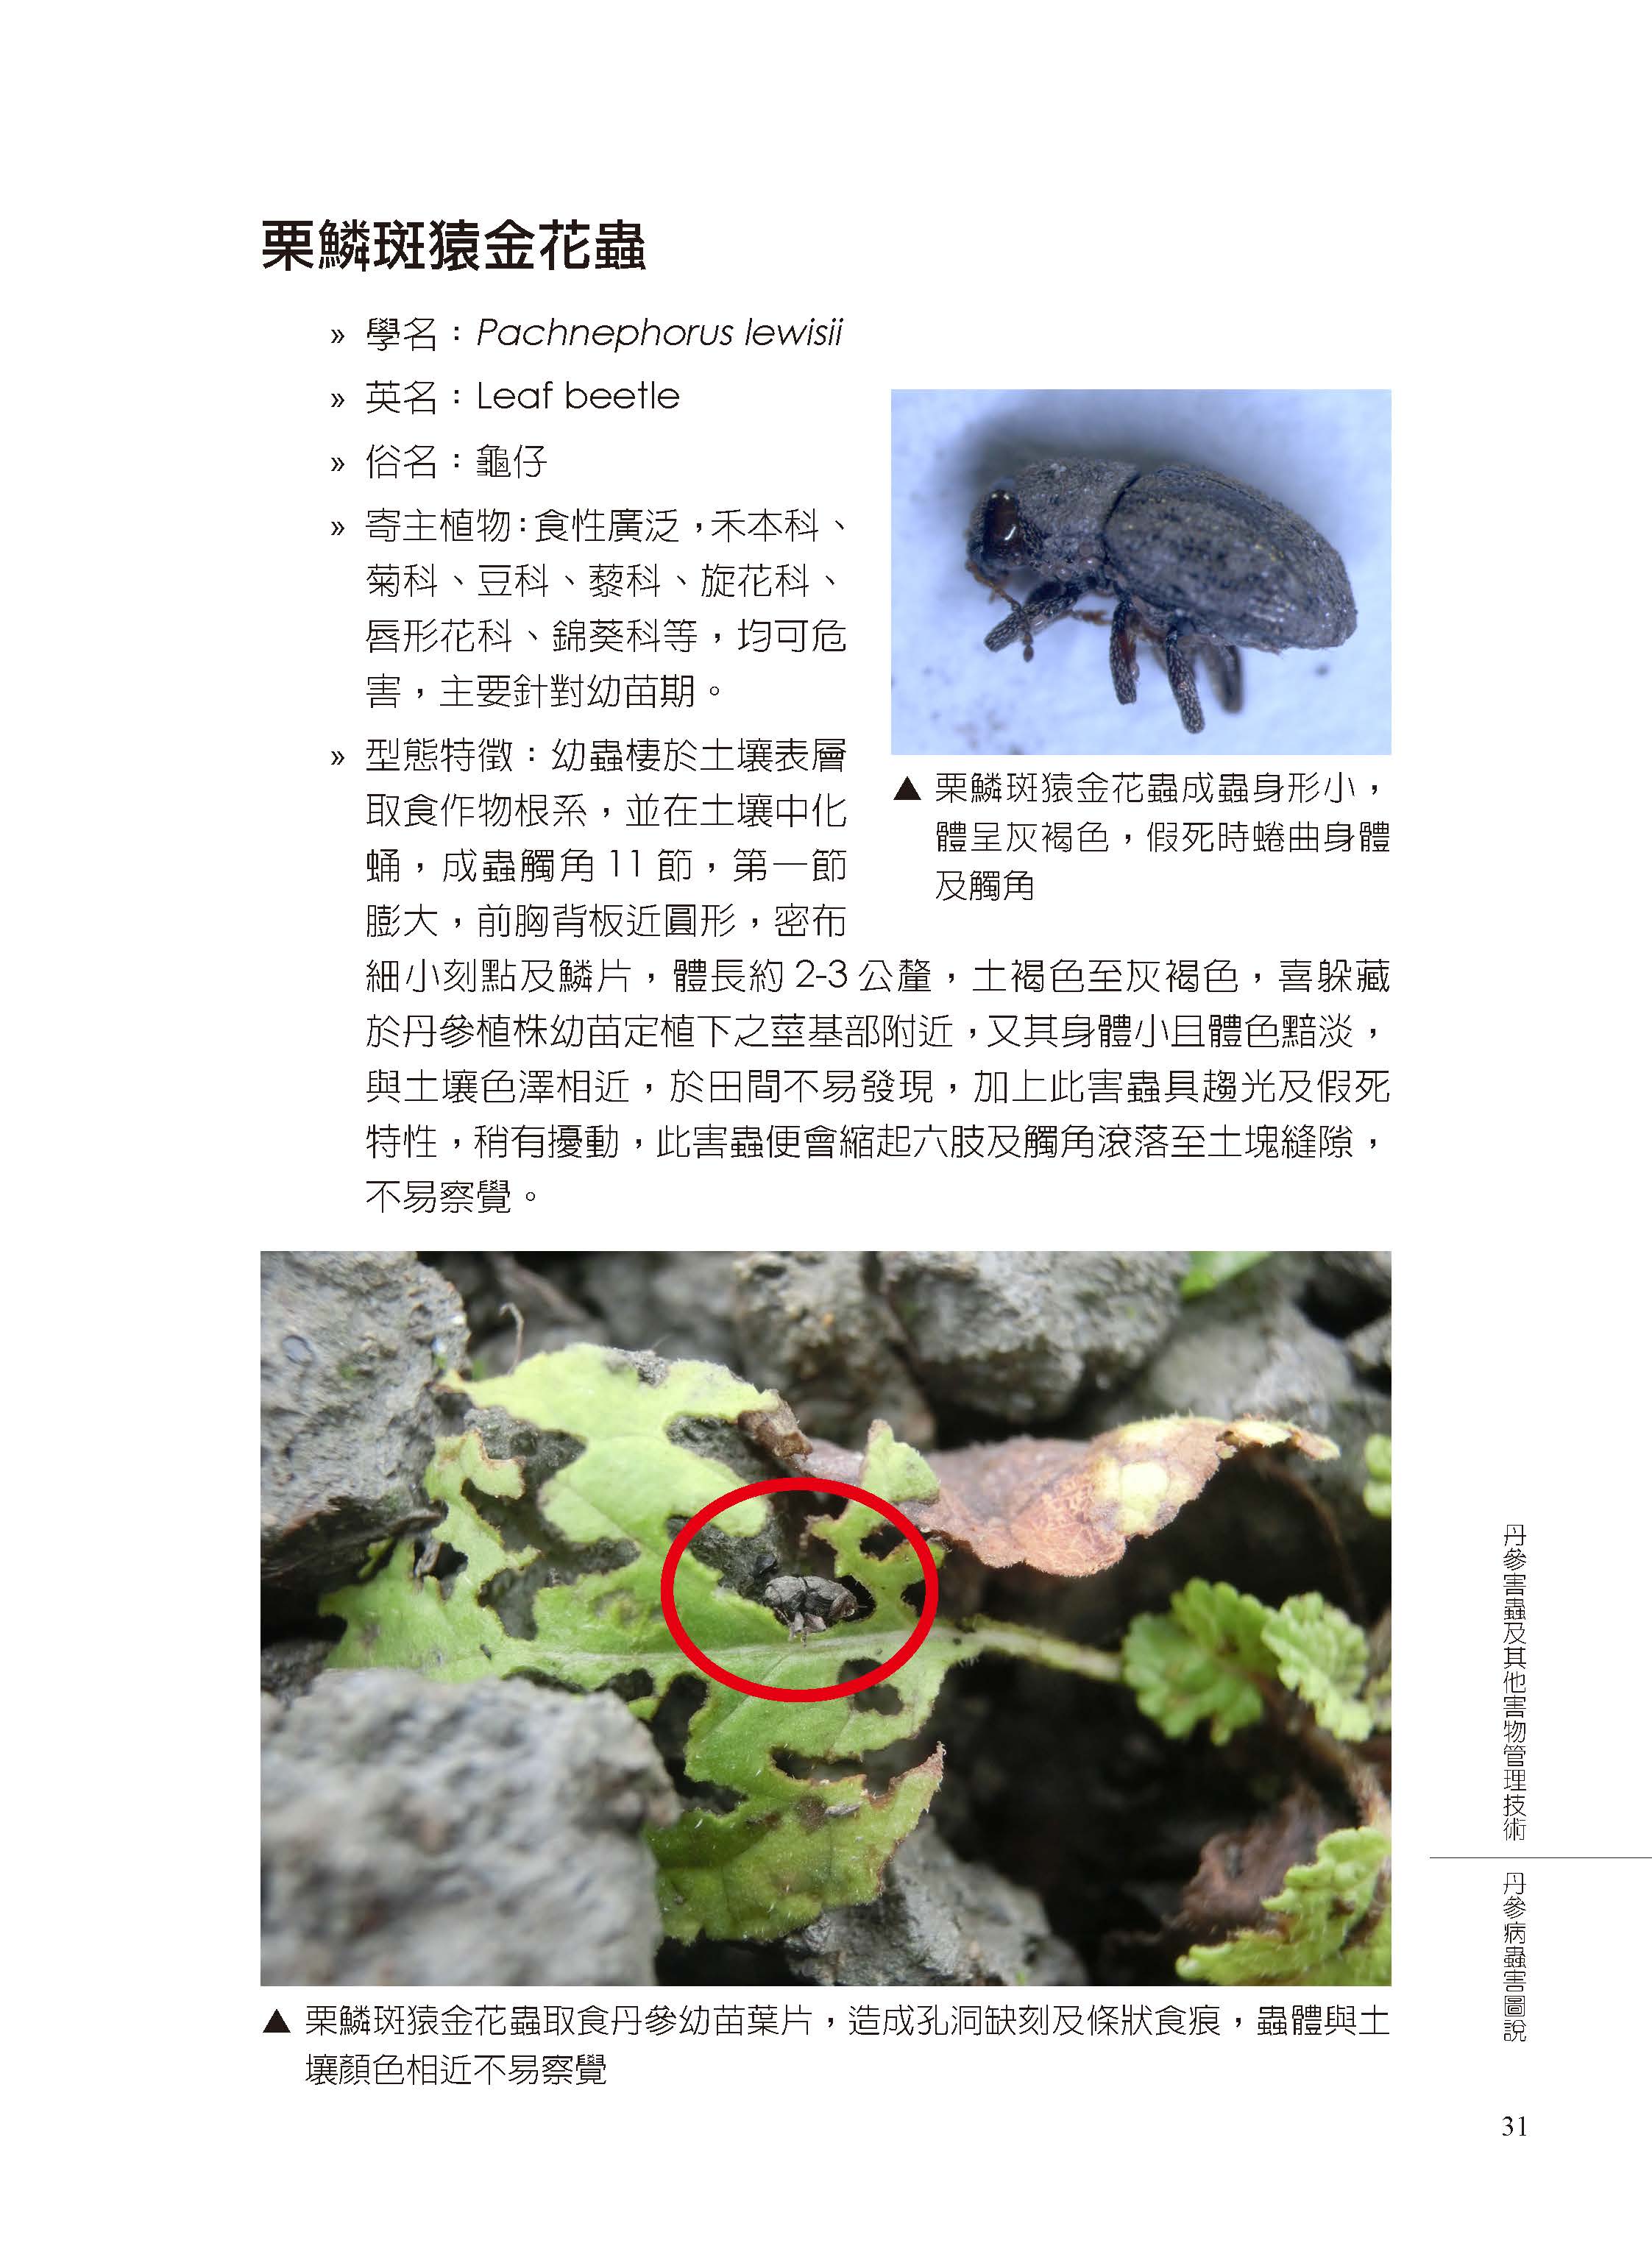 丹參害蟲及其他有害生物管理-11